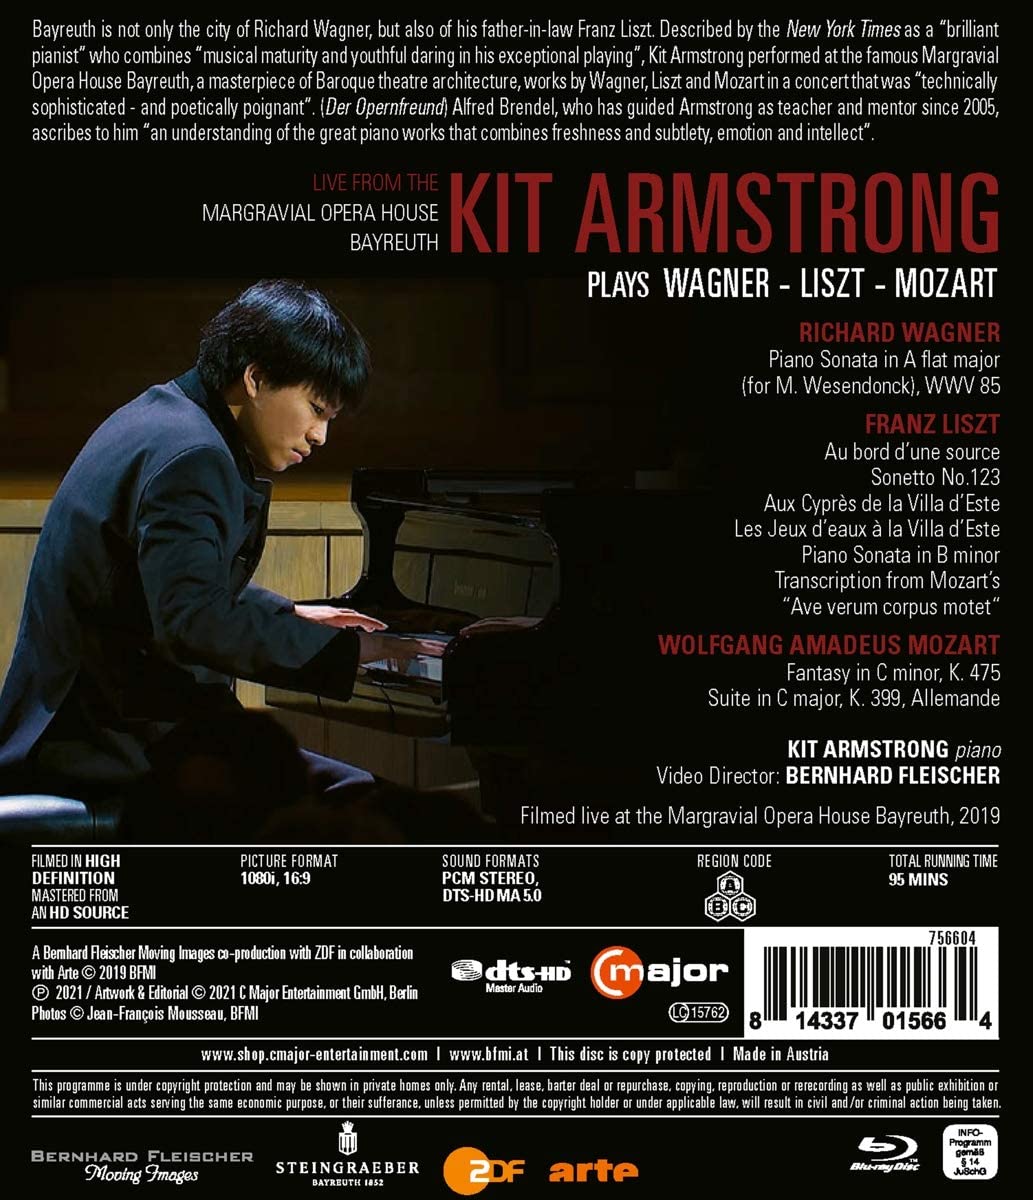 키트 암스트롱이 연주하는 바그너 / 리스트 / 모차르트 (Kit Armstrong Plays Wagner / Liszt / Mozart) 